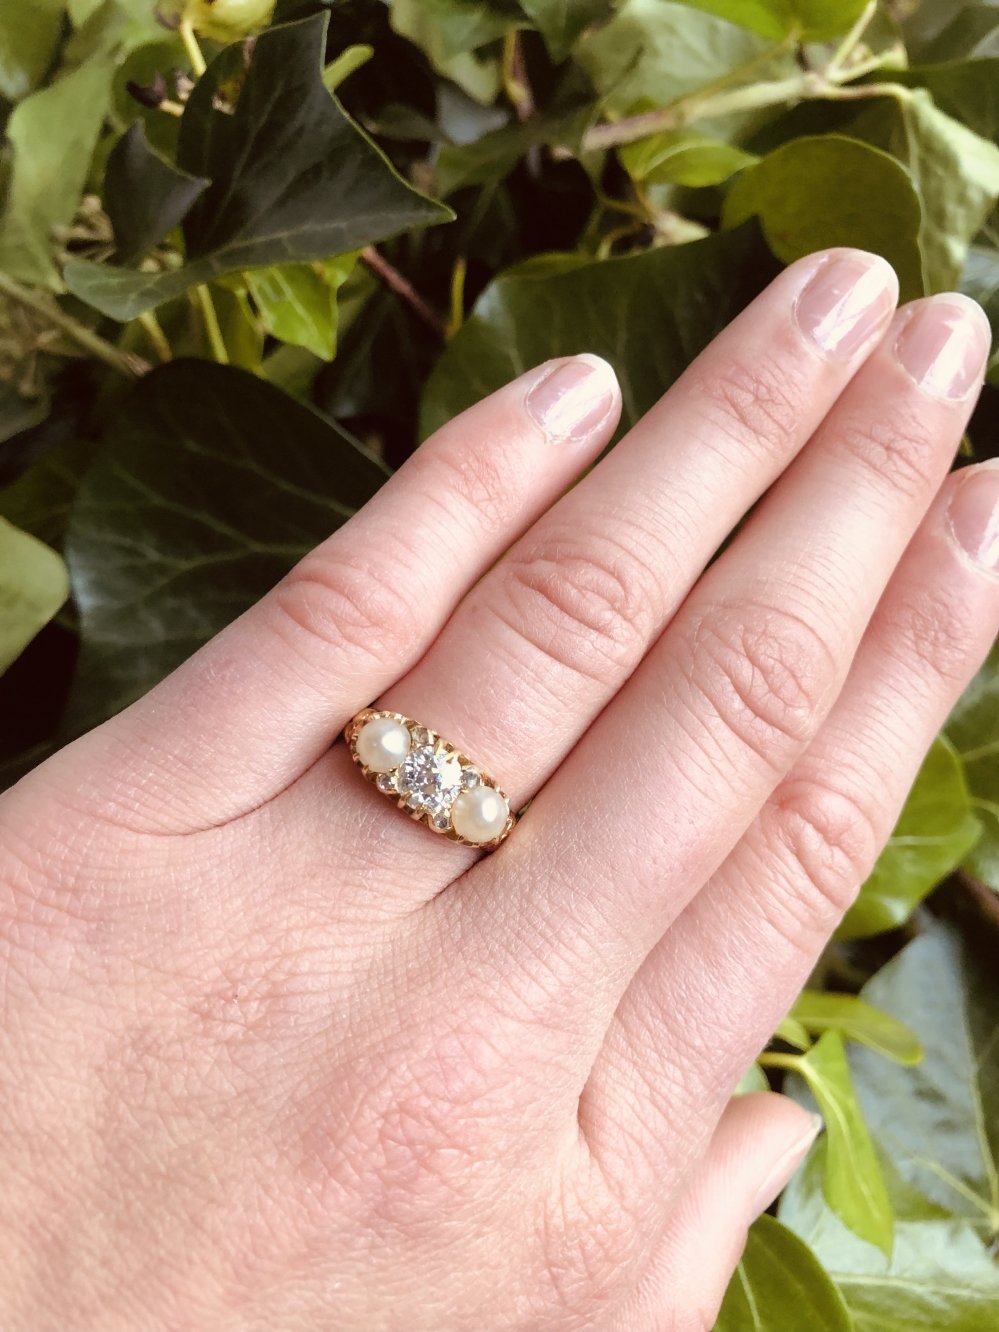 Antieke ringen - Victoriaanse rijring parel diamant